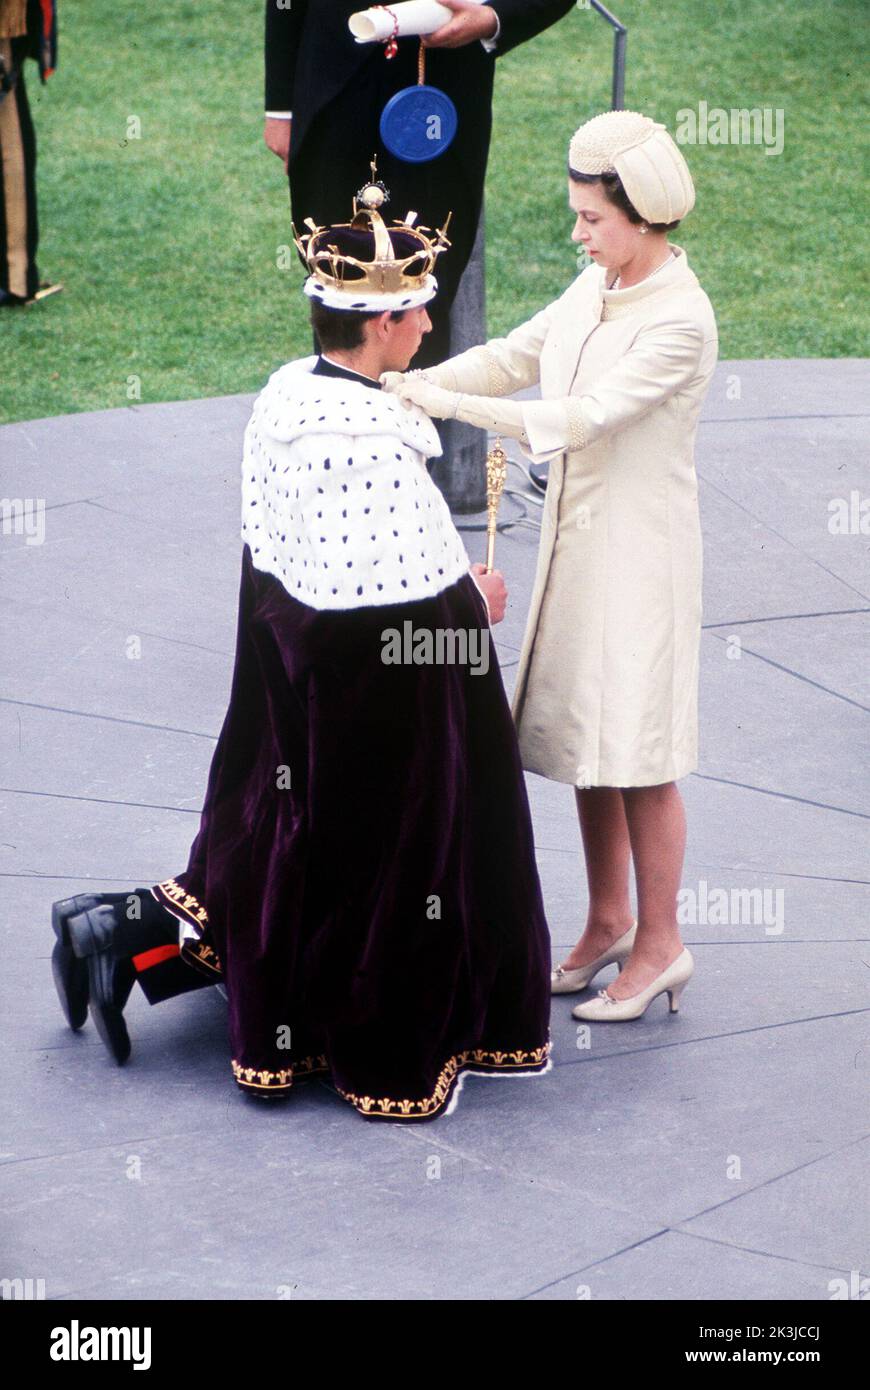 Foto de archivo de fecha 01/07/69 de la Reina Isabel II, que formalmente invertía a su hijo el Príncipe Carlos con el Coronel del Príncipe de Gales durante una ceremonia de investidura en el castillo de Caernarfon. Fecha de emisión: Martes 27 de septiembre de 2022. Foto de stock